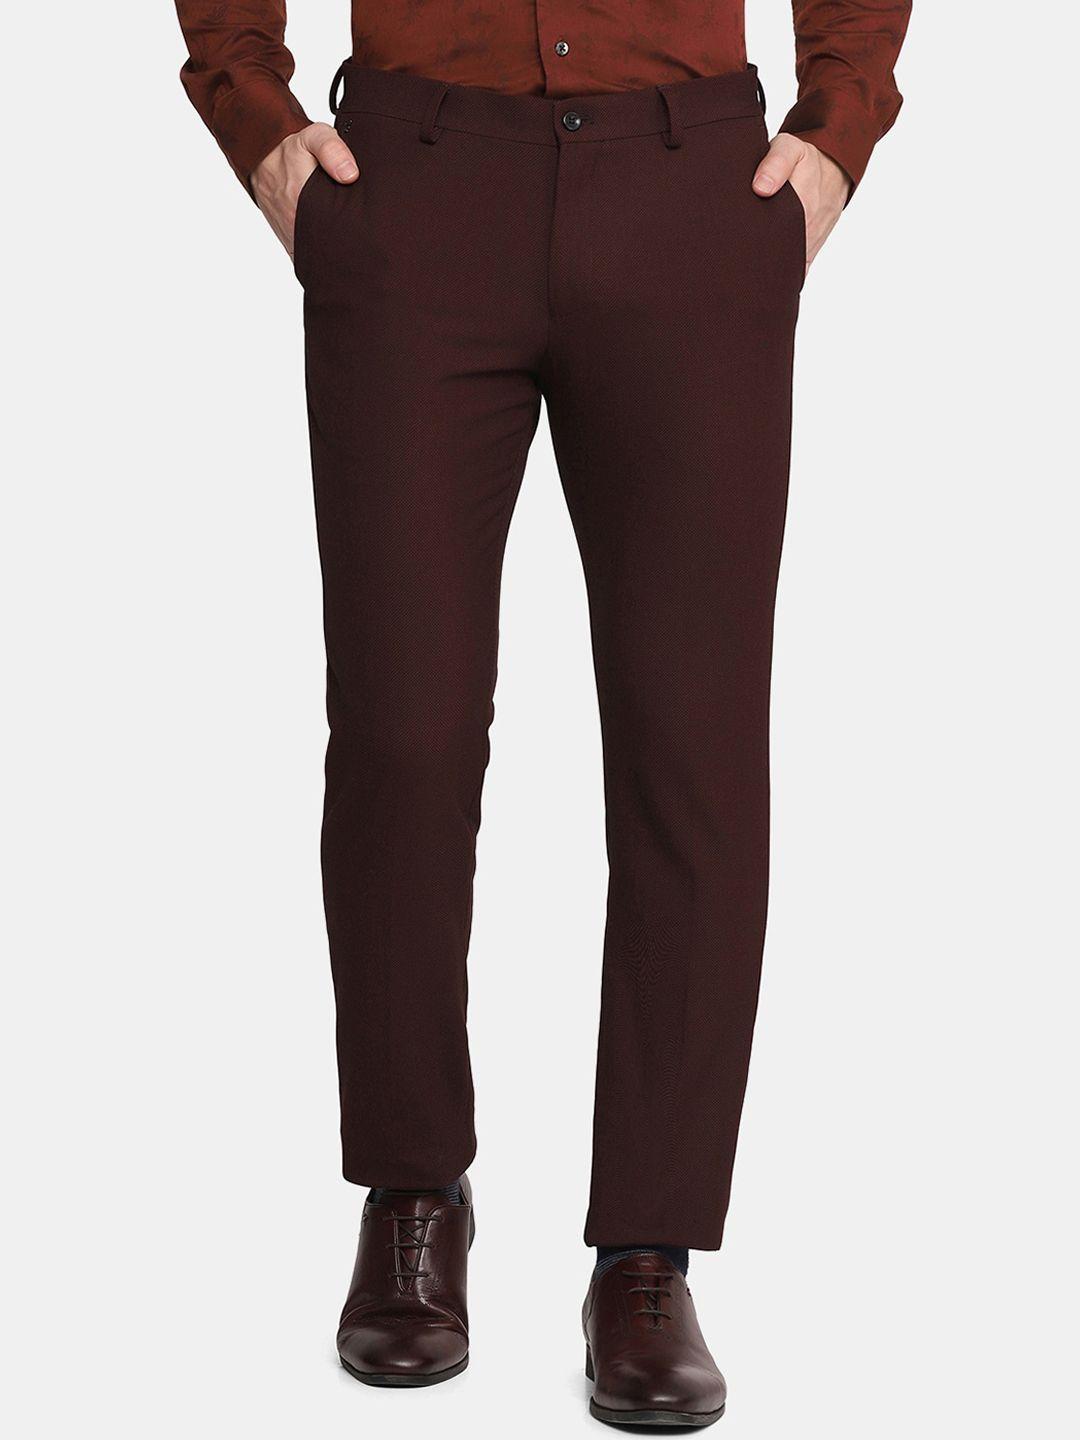 blackberrys-men-maroon-skinny-fit-trousers